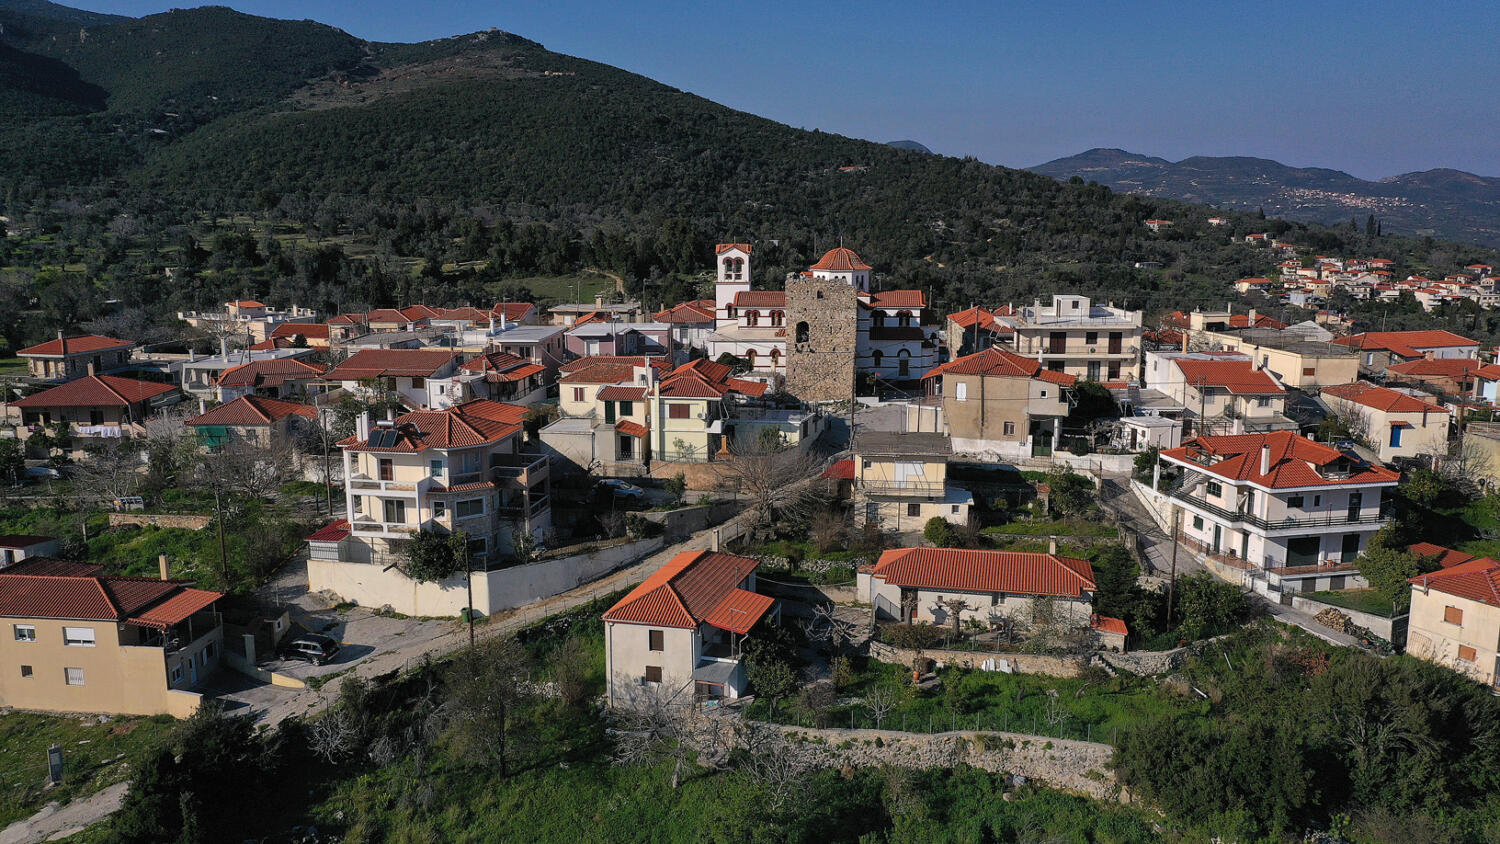 Χωριό Κάδι. Φωτογραφία: ©Βασίλης Συκάς, για τον Δήμο Κύμης-Αλιβερίου